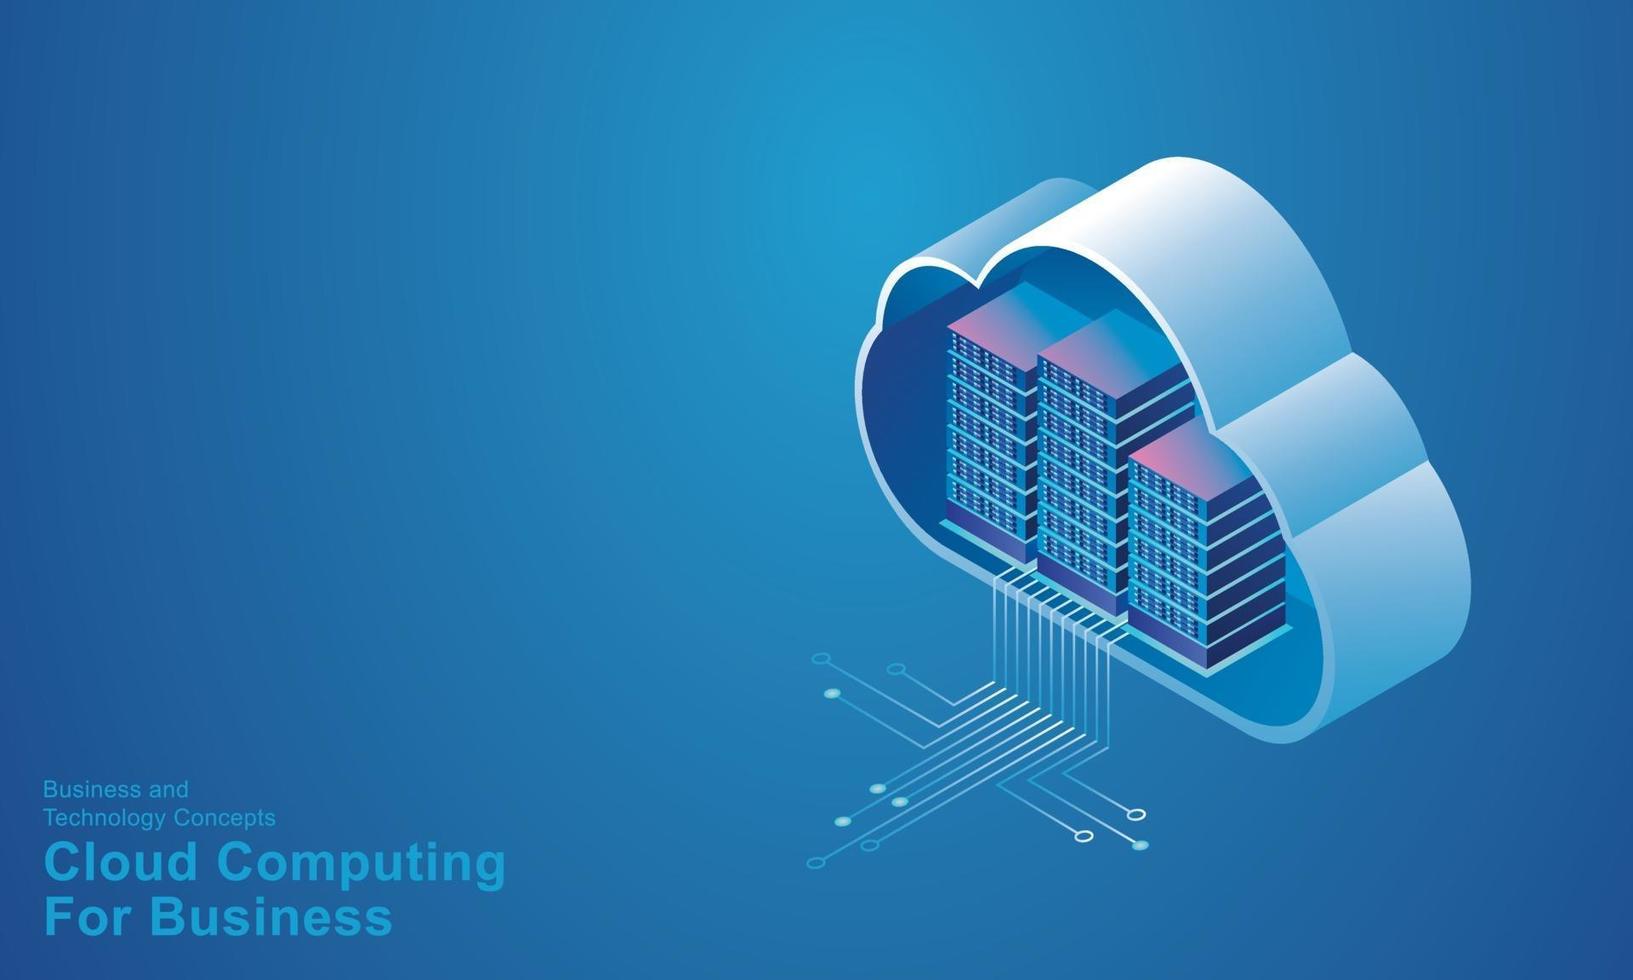 Computertechnologie Serverraum digitales Gerät isometrisches Konzept Cloud-Speicher Kommunikation mit dem Netzwerk Online-Geräte lädt Download-Informationsdaten in eine Datenbank auf Cloud-Services-Vektor hoch vektor